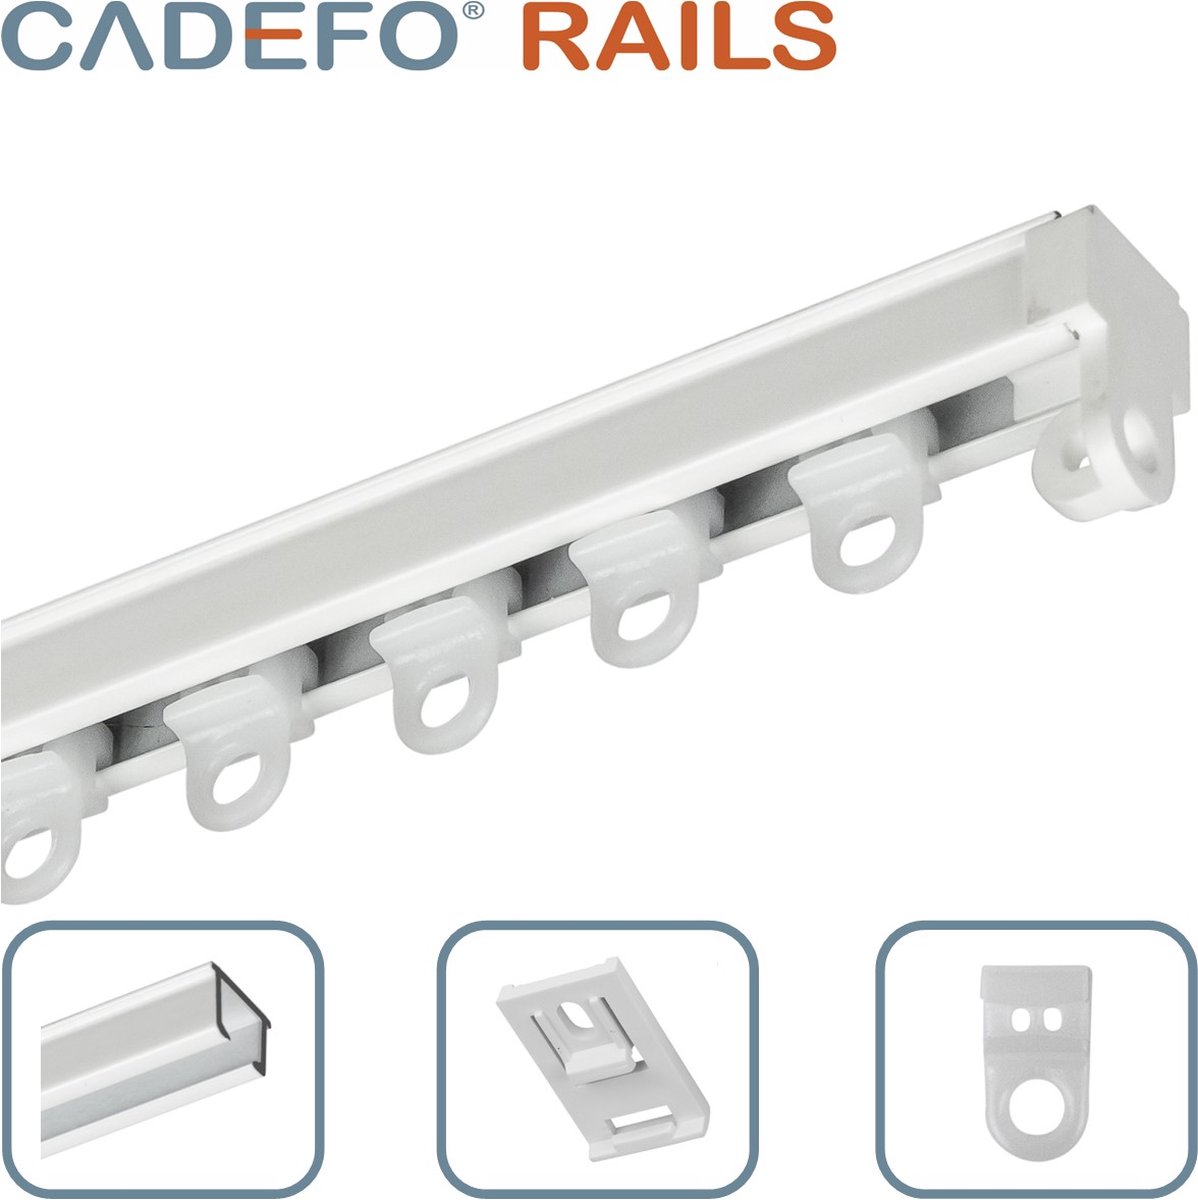 CADEFO RAILS (401 - 450 cm) Gordijnrails - Compleet op maat! - UIT 1 STUK - Leverbaar tot 6 meter - Plafondbevestiging - Lengte 426 cm